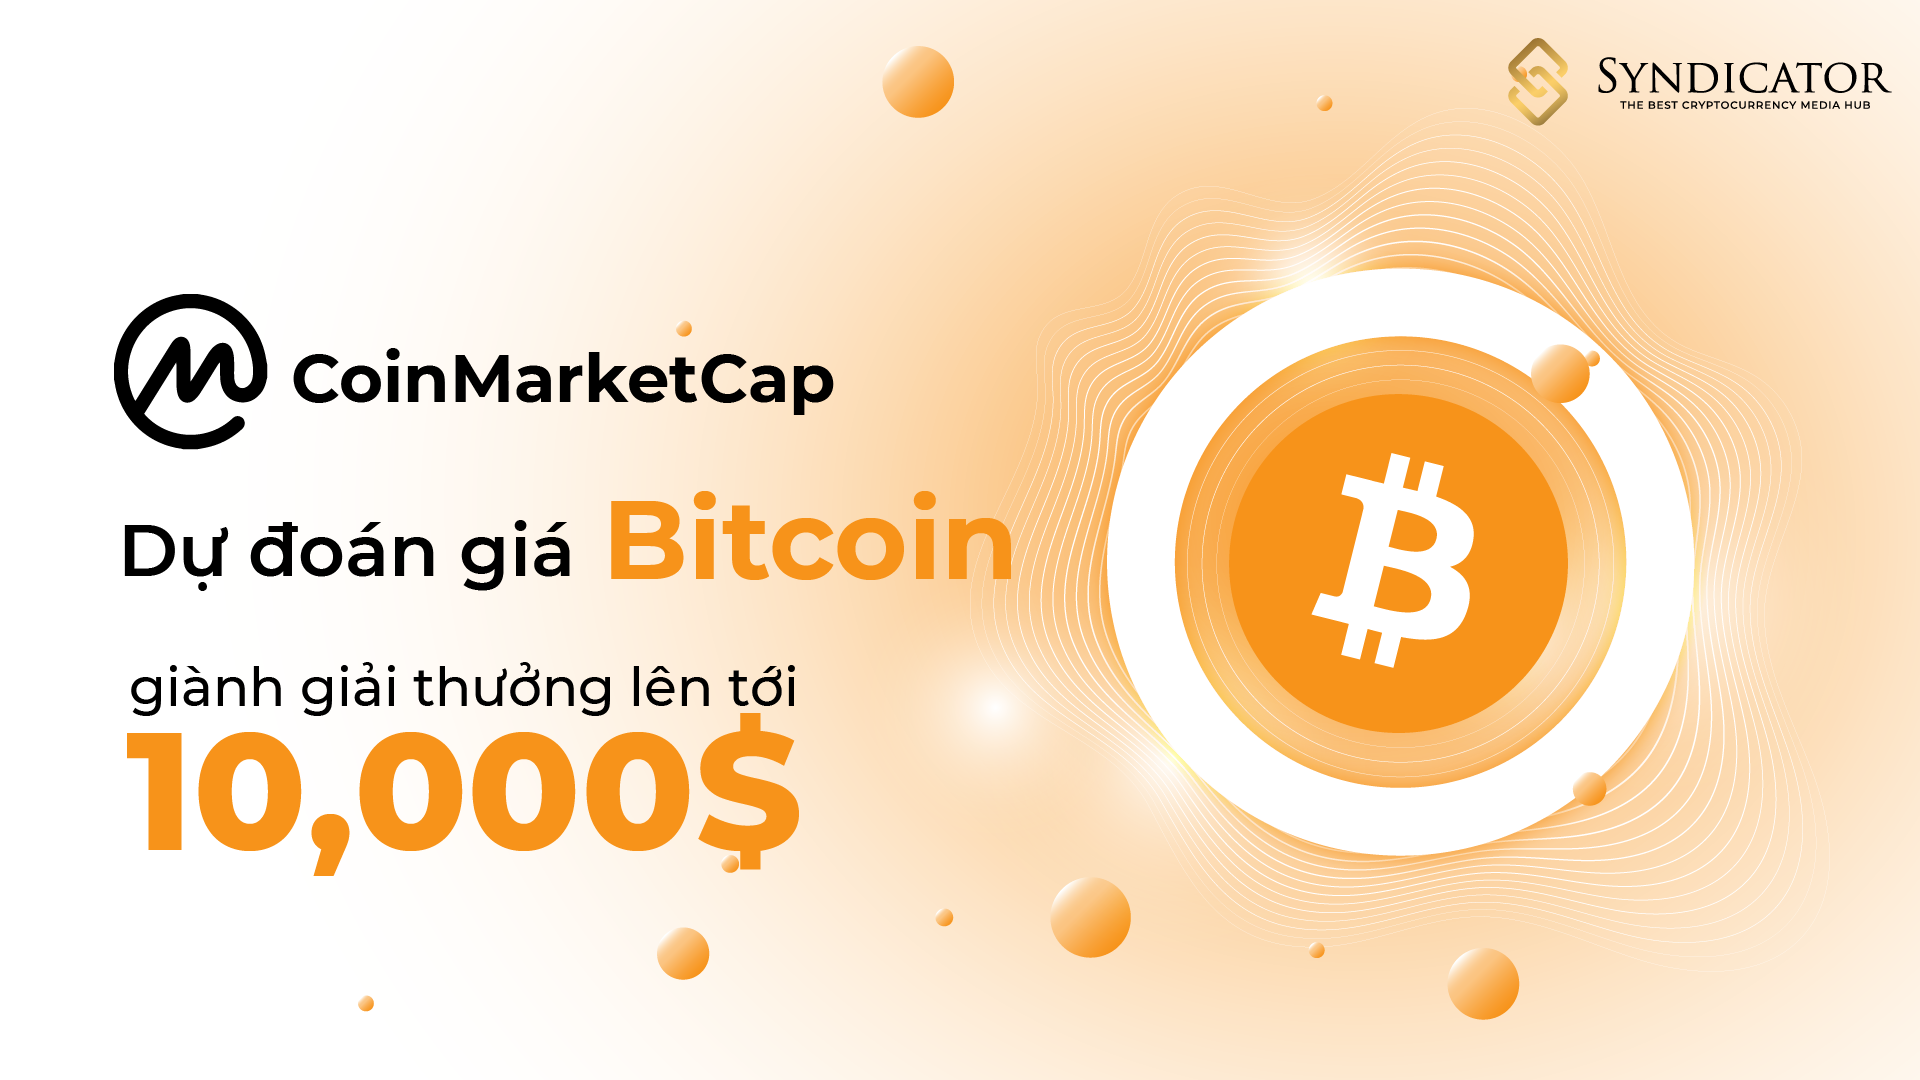 CoinMarketCap - Dự đoán giá Bitcoin và giành tổng giải thưởng lên tới 10,000$ - Syndicator